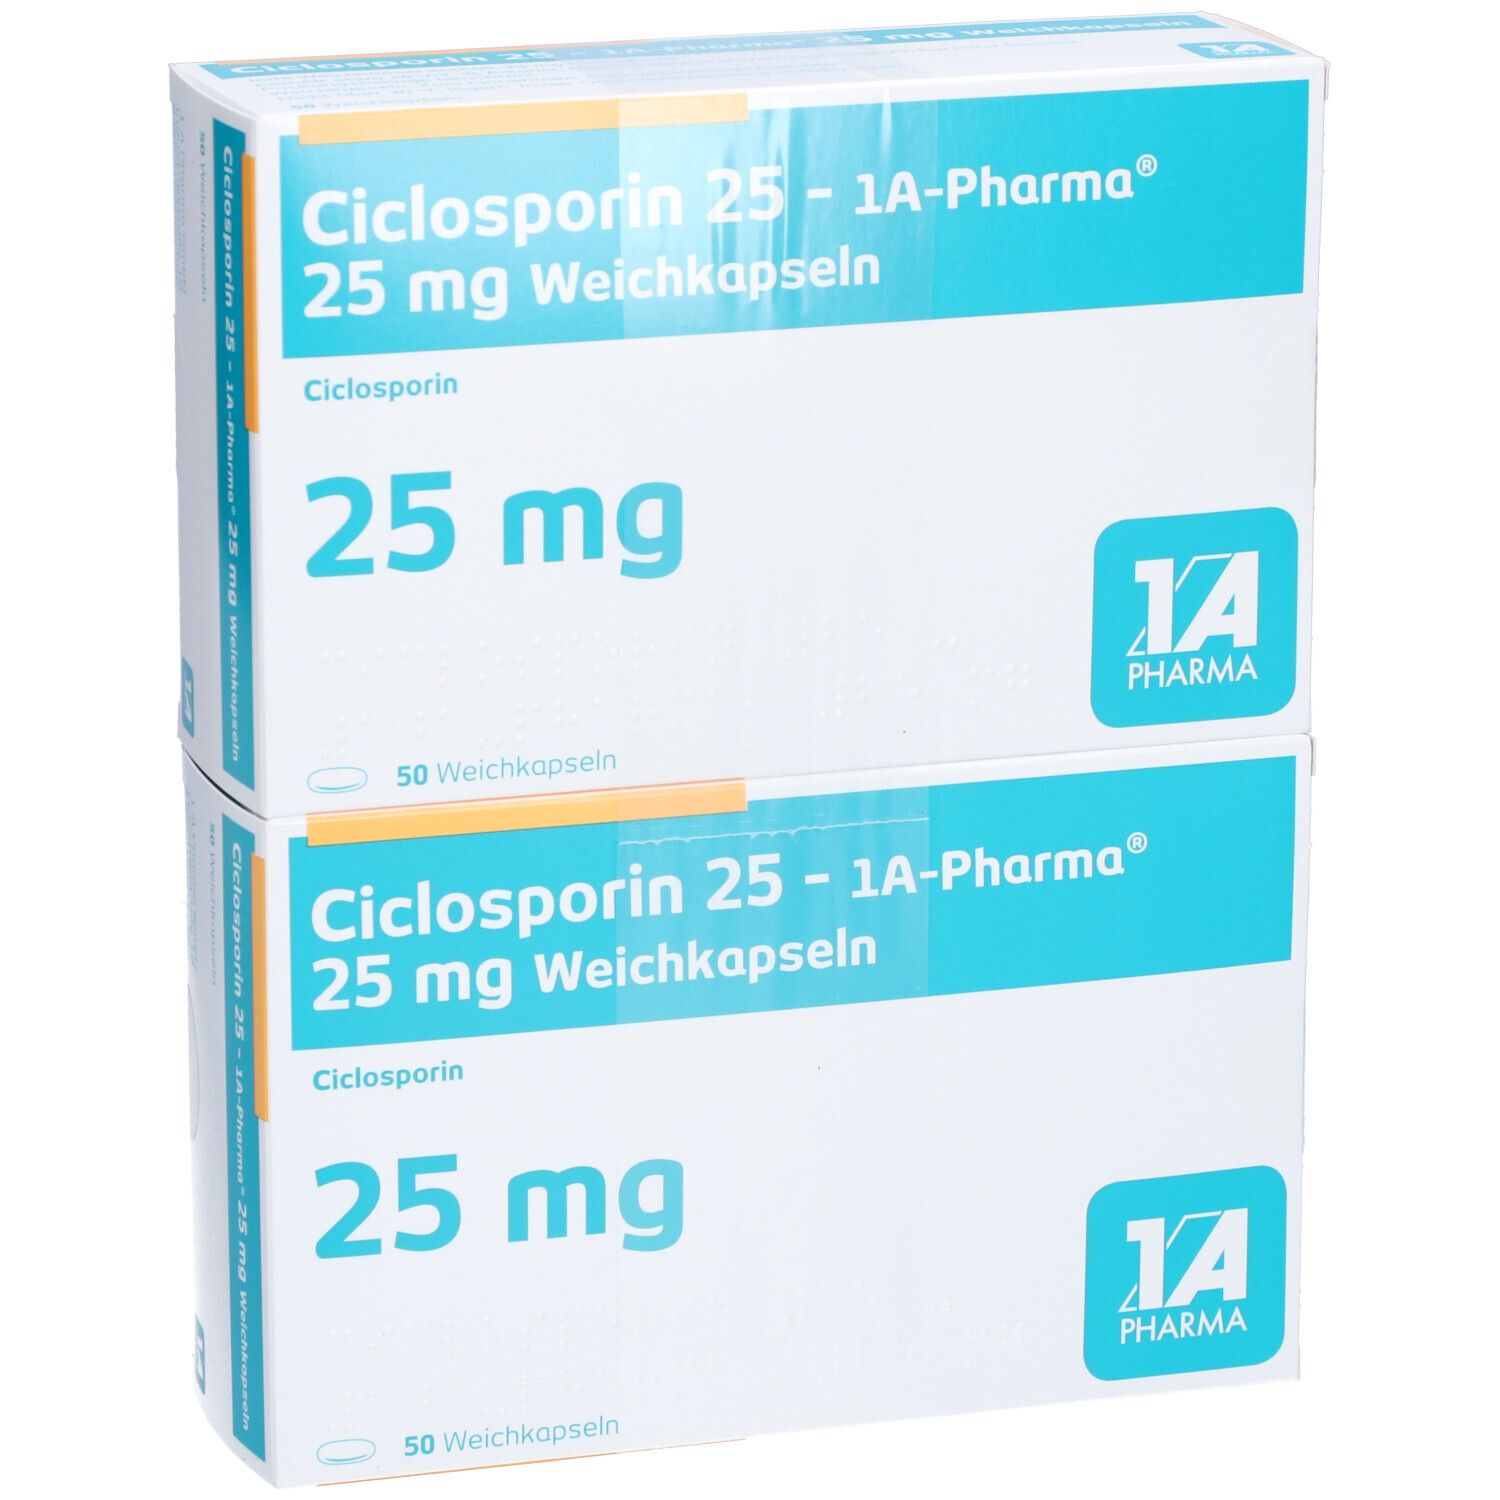 Ciclosporin 25 1A Pharma®